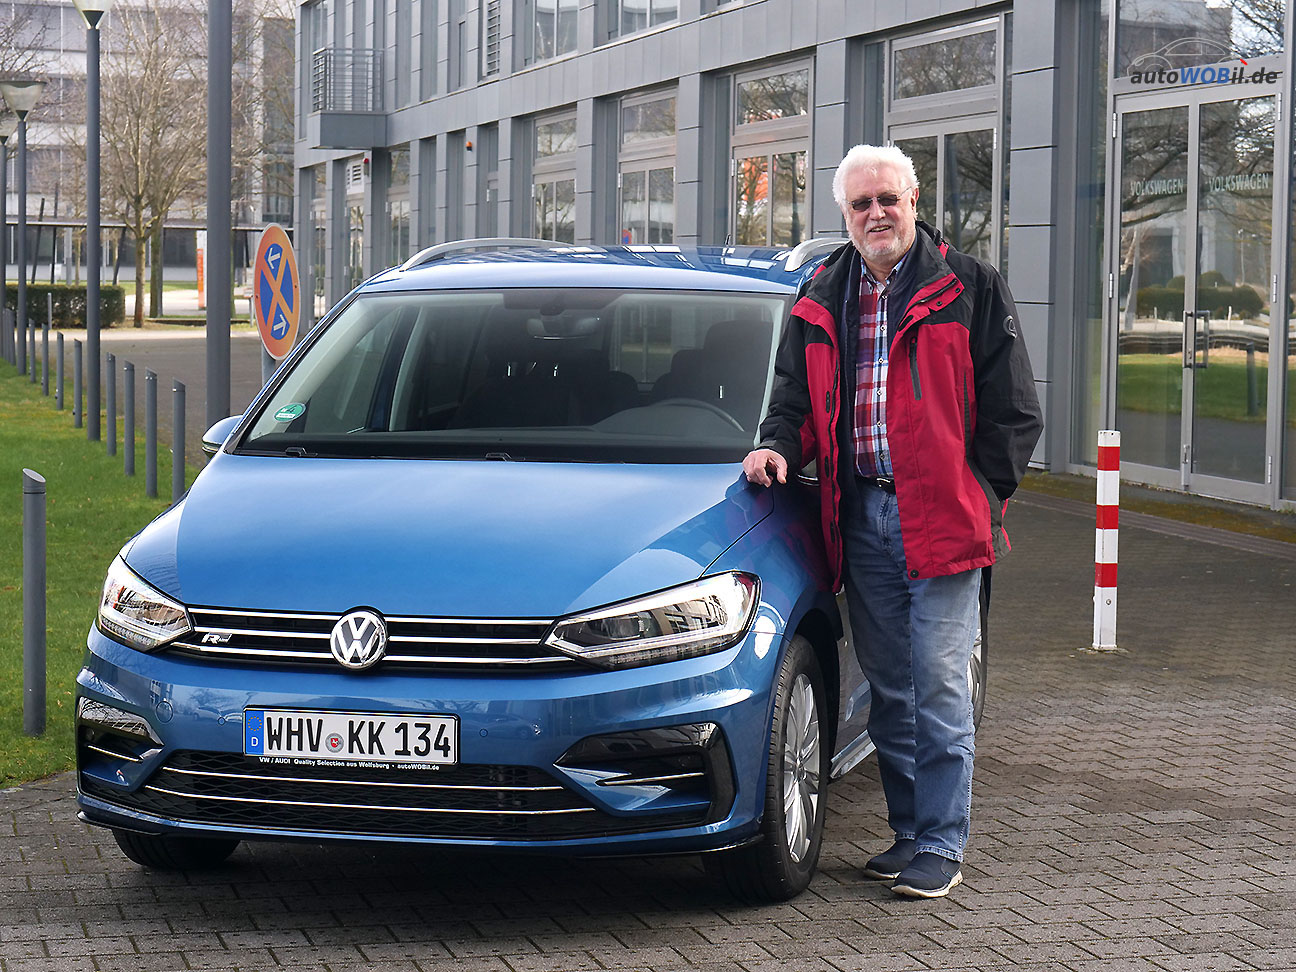 Peter J. (71), Rentner aus 26389 Wilhelmshaven - Autokauf in Wolfsburg bei autoWOBil.de macht einfach Spaß. 